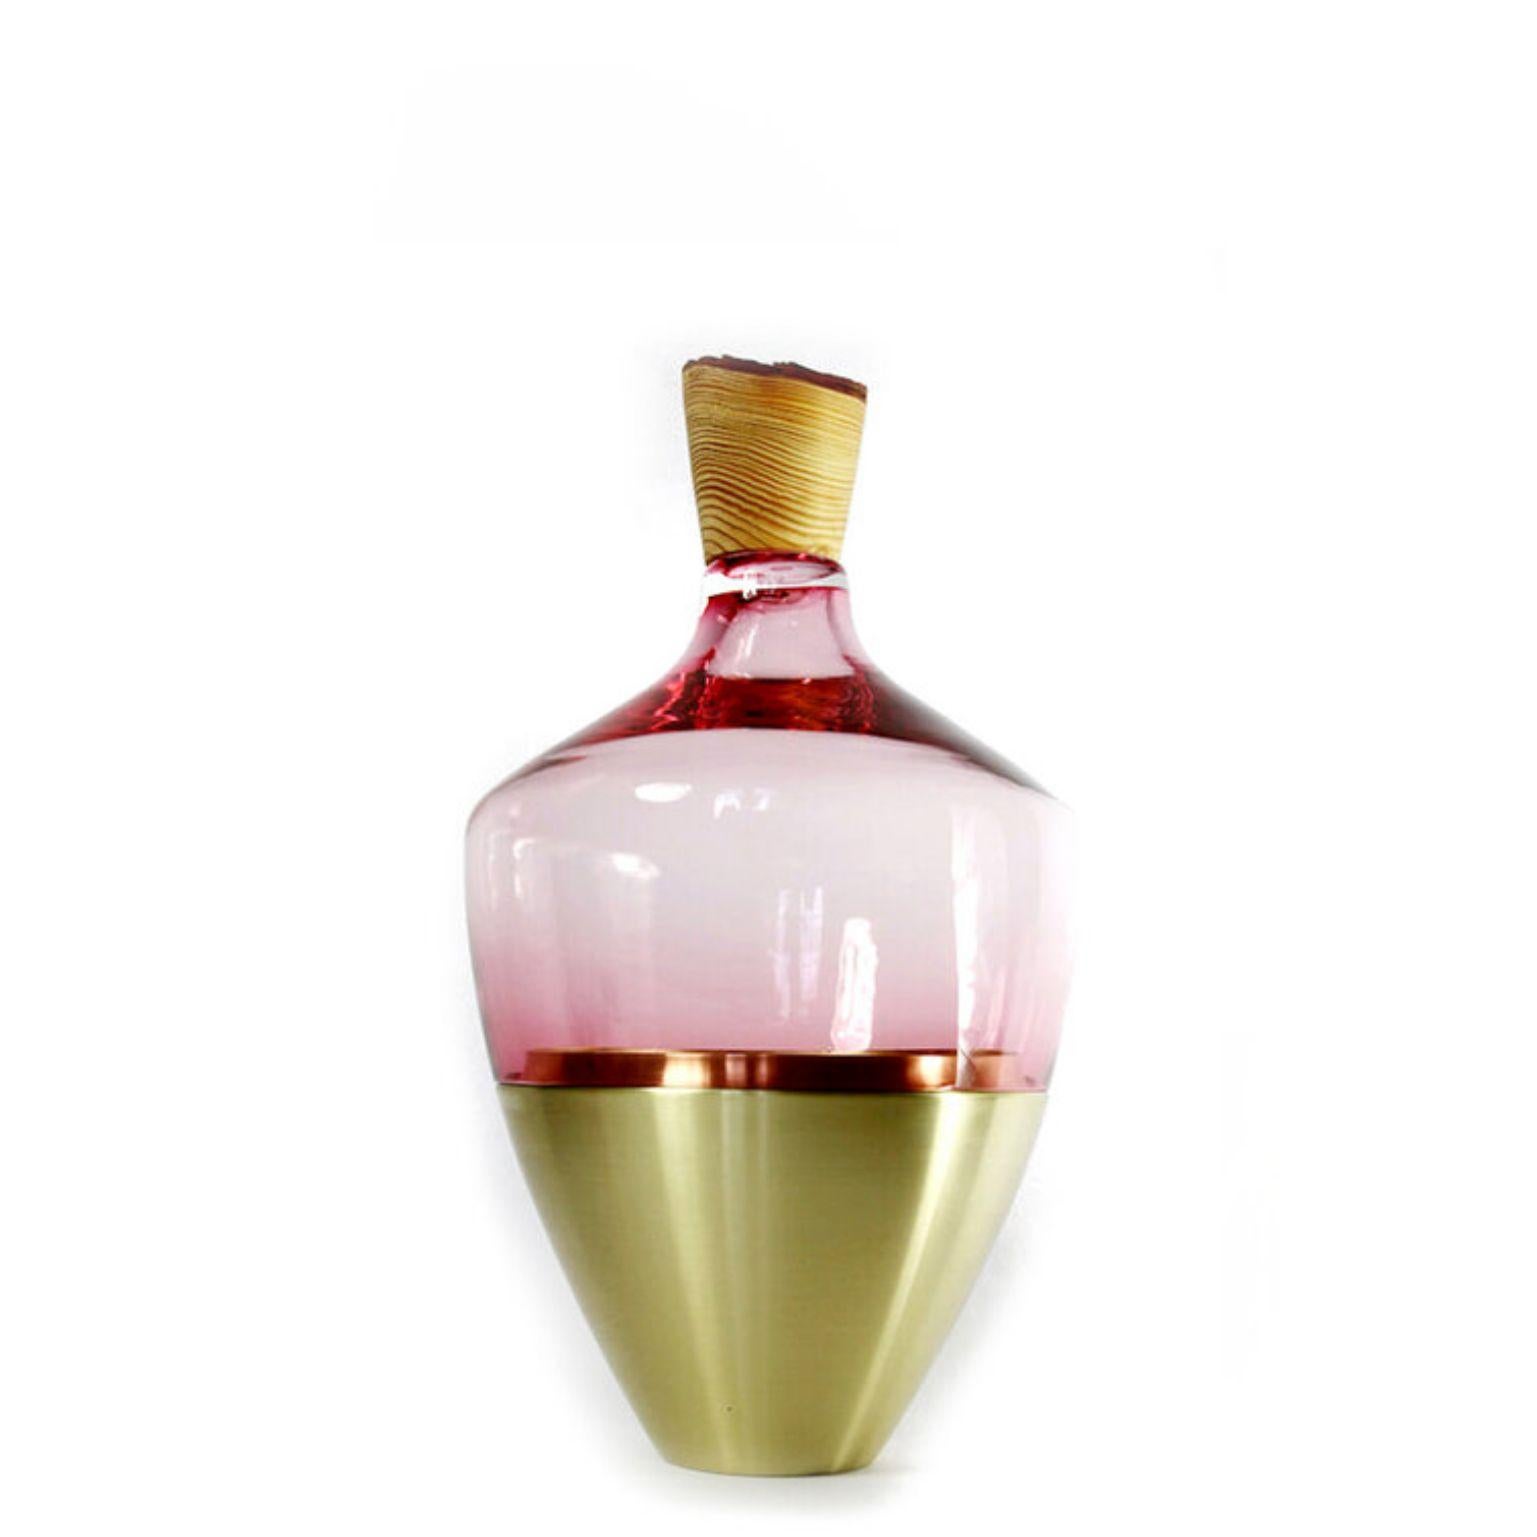 Vase aus mundgeblasenem Glas und Messing - Pia Wüstenberg
Abmessungen: Höhe 55 x Durchmesser 30cm
Dieses Sortiment, das sowohl rau als auch raffiniert ist, spielt mit den vielfältigen Metamorphosen, die Glas als Material bietet. Das Glas wird